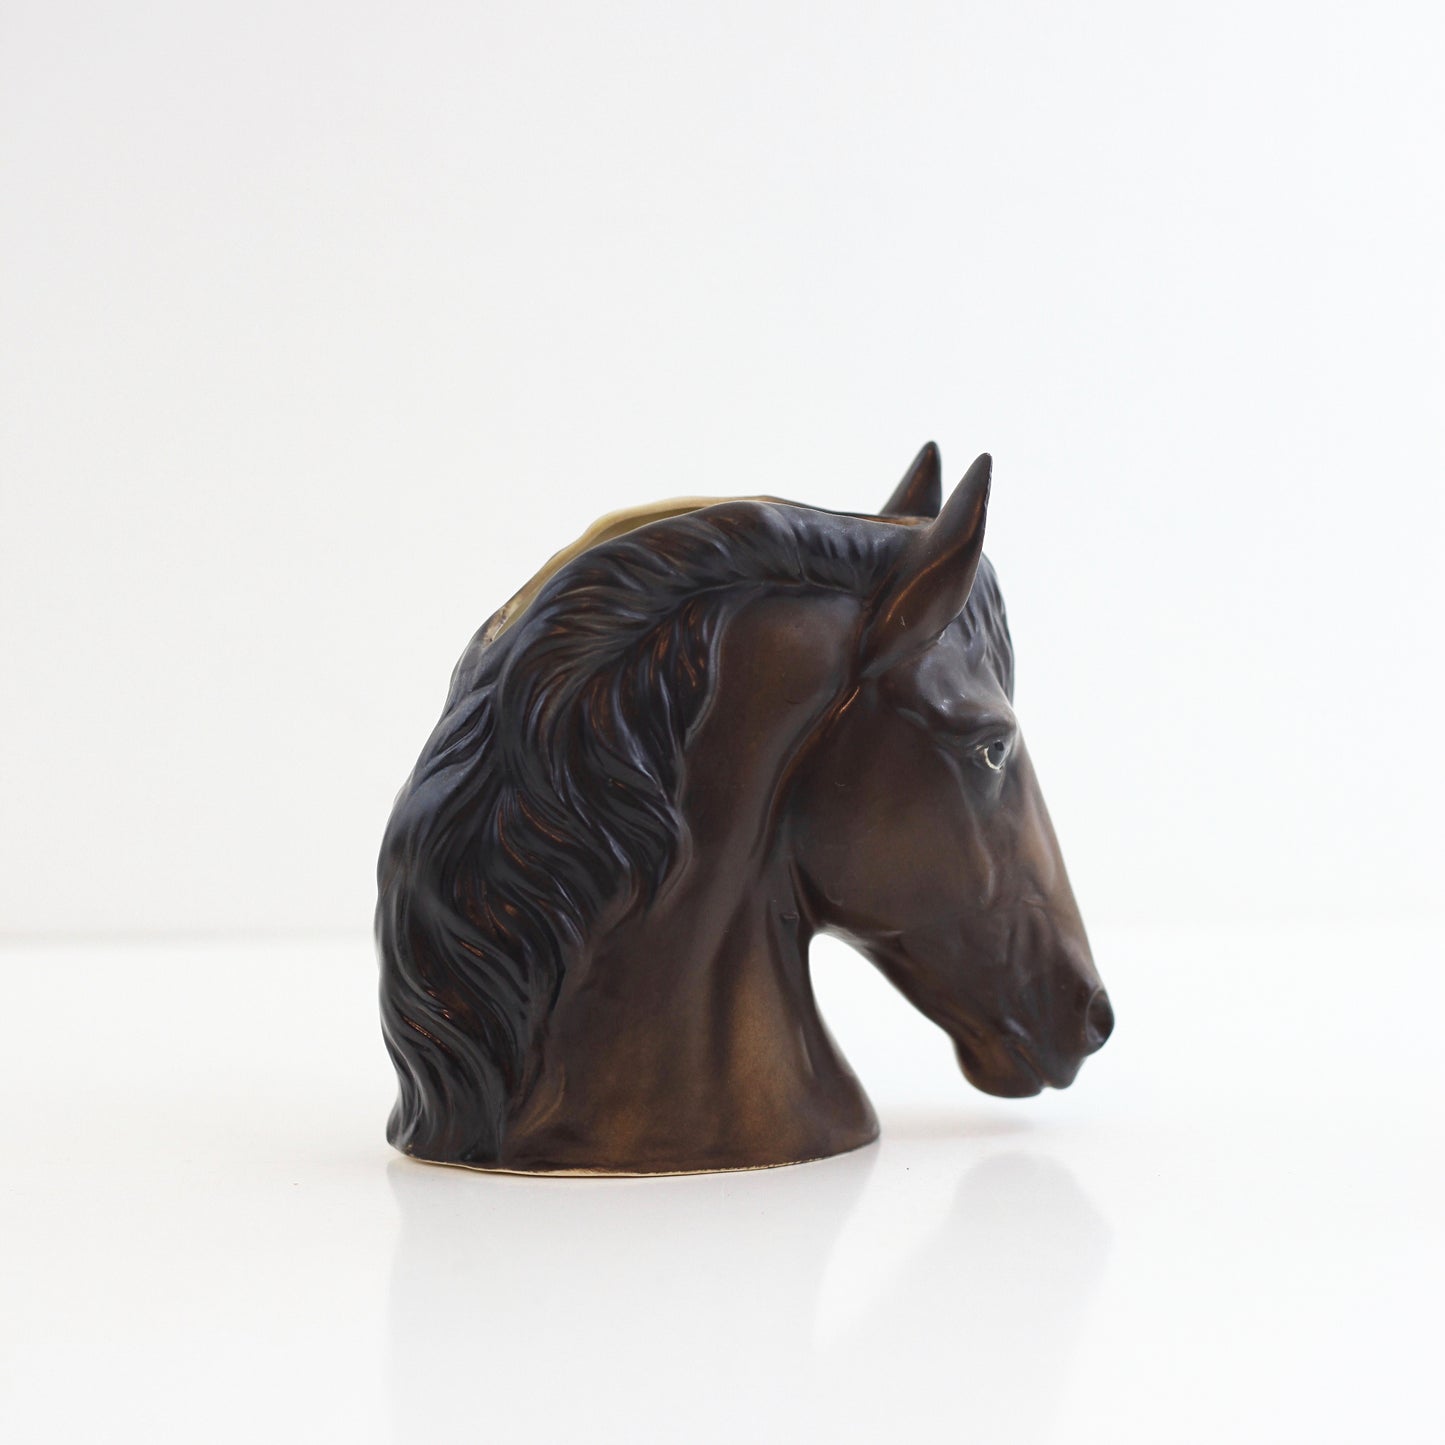 SOLD - Vintage Lefton Ceramic Horse Planter